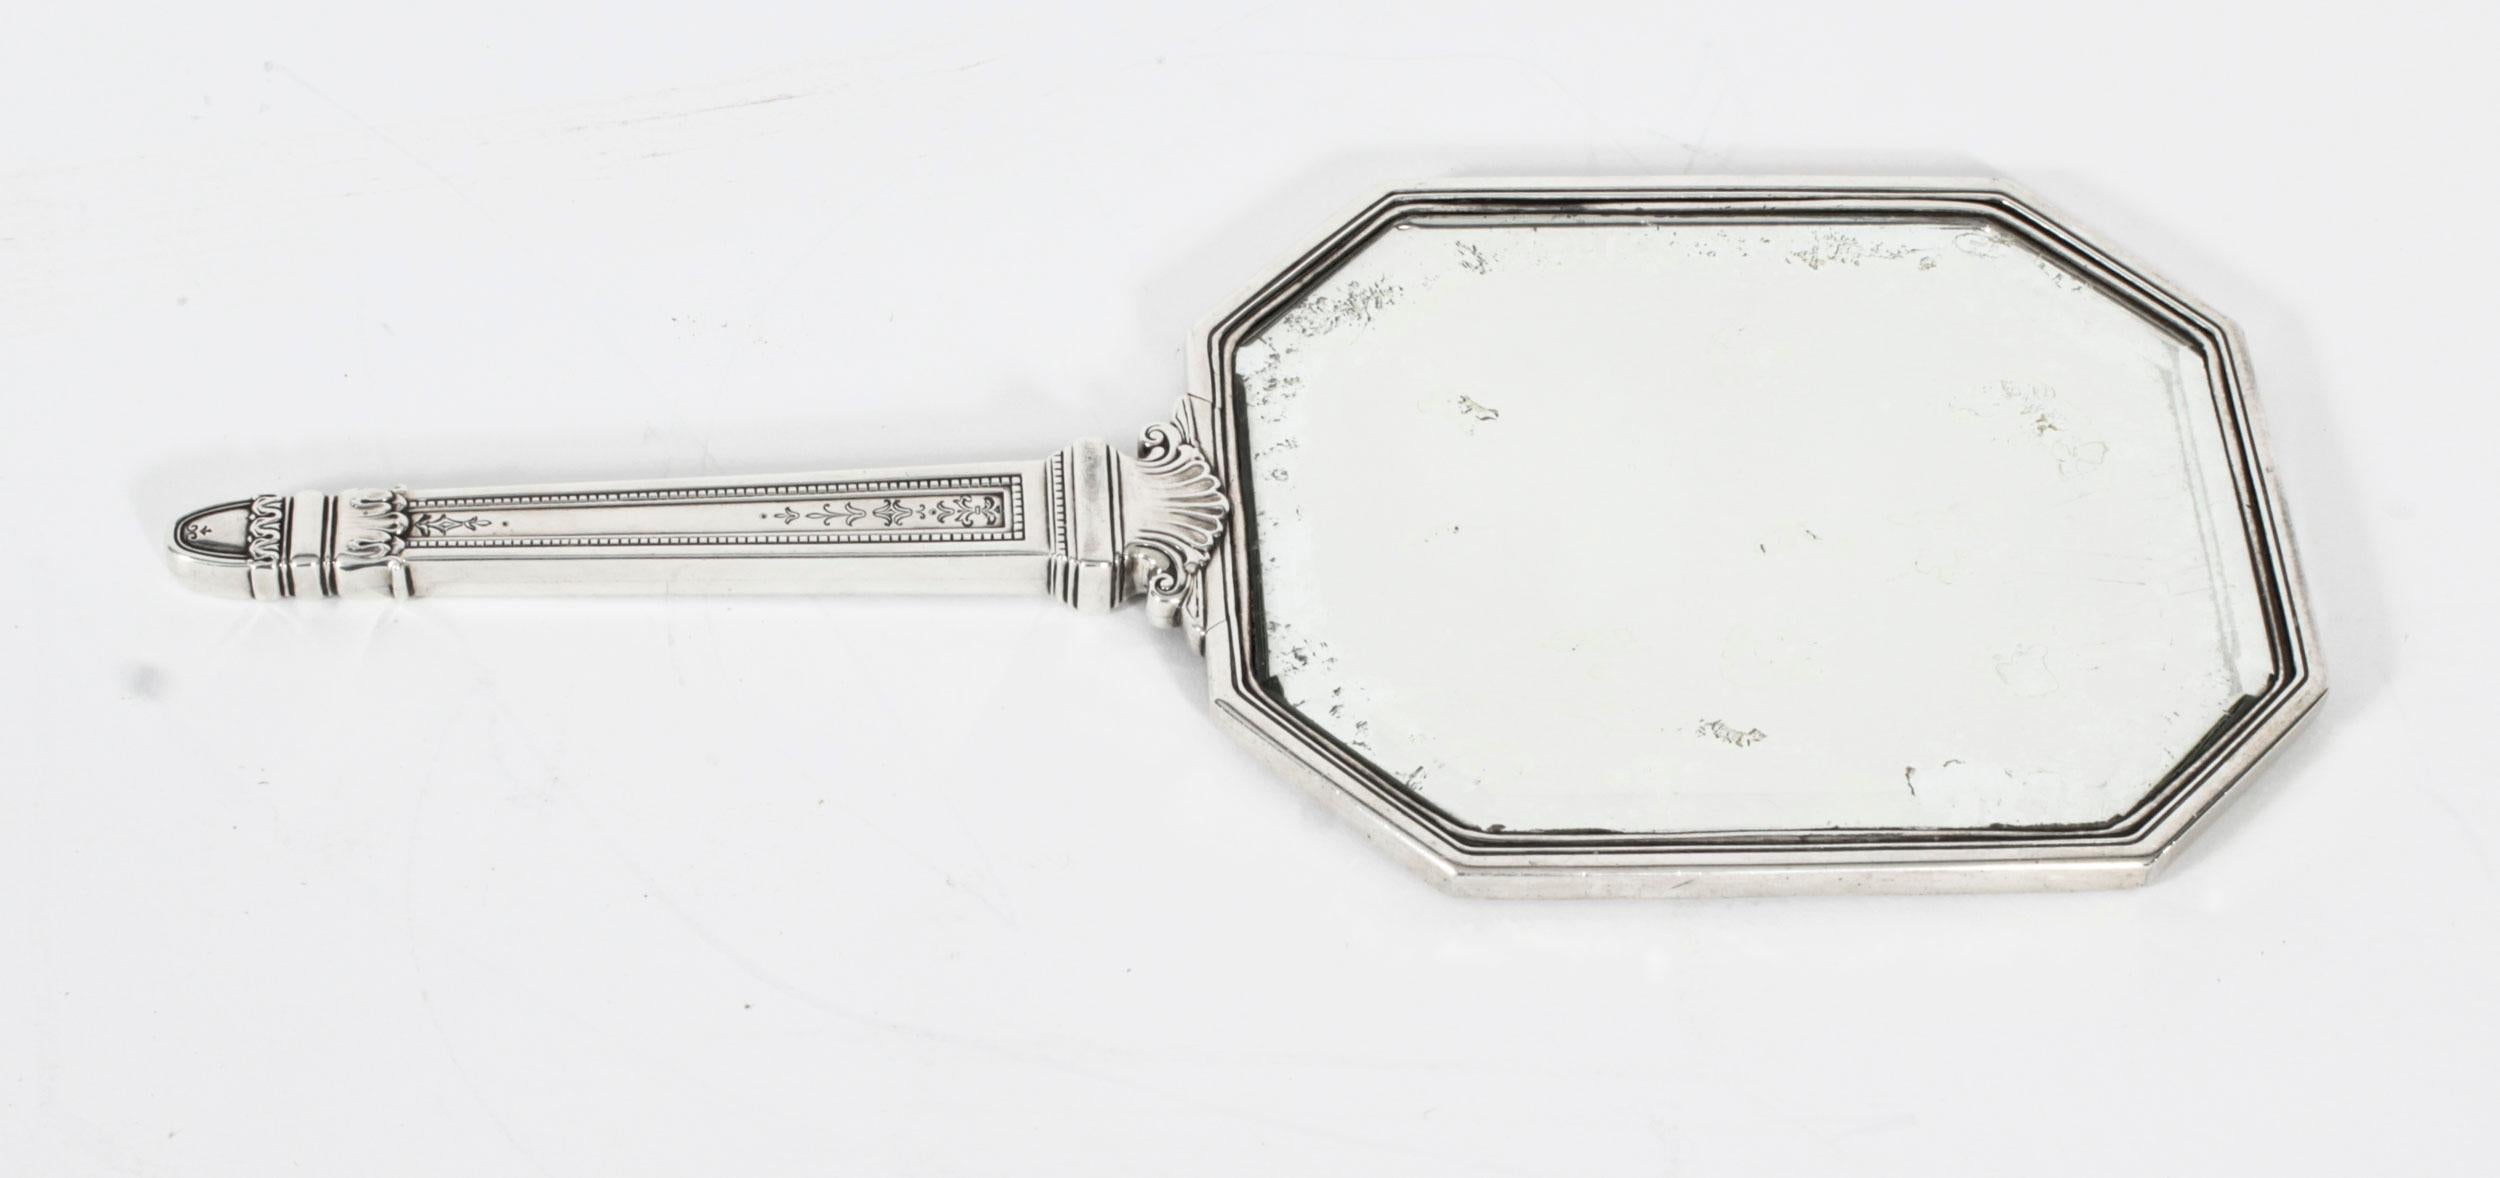 Dies ist eine wunderbare antike Edwardian Sterling Silber Hand-Spiegel mit Marken für 925 Sterling Silber, die Marke des Herstellers der renommierten Silberschmiede  Tiffany & Co. und das Datum CIRCA 1900.
  
Der Kosmetikspiegel ist mit schwerem,